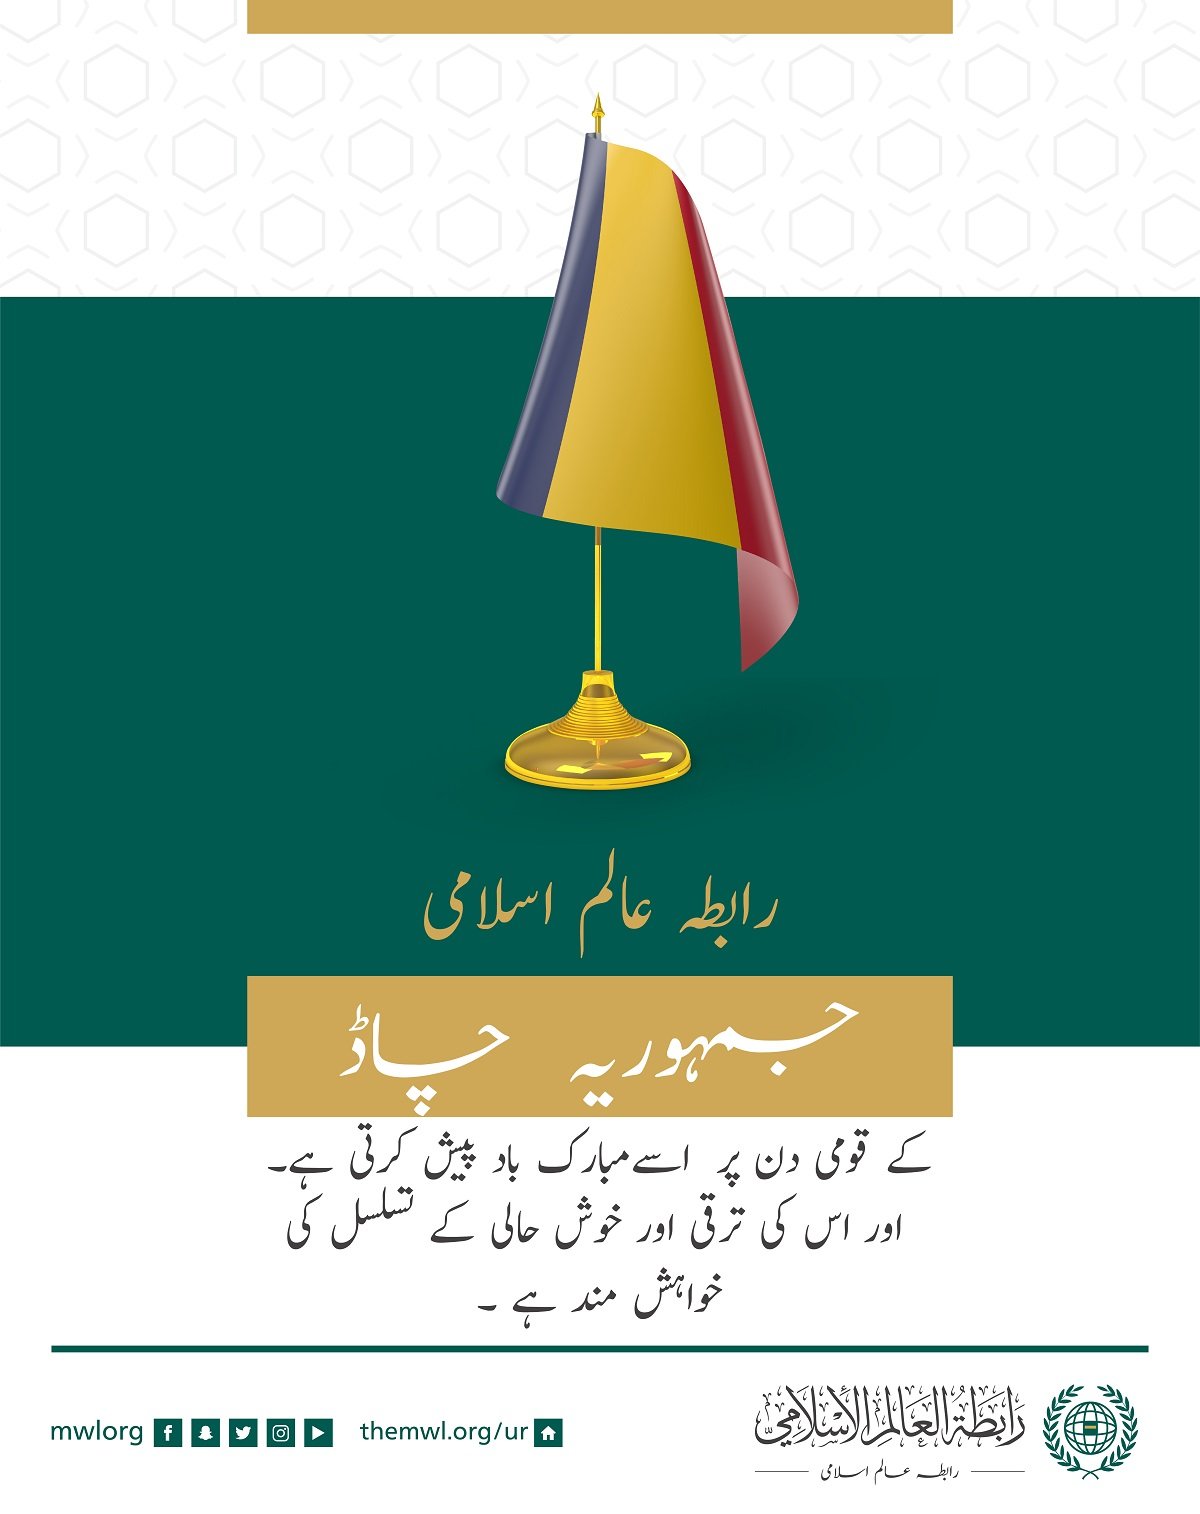 رابطہ عالم اسلامی کی طرف سے جمہوریہ چاڈ کے قومی دن کے موقع پر مبارک باد کا پیغام: